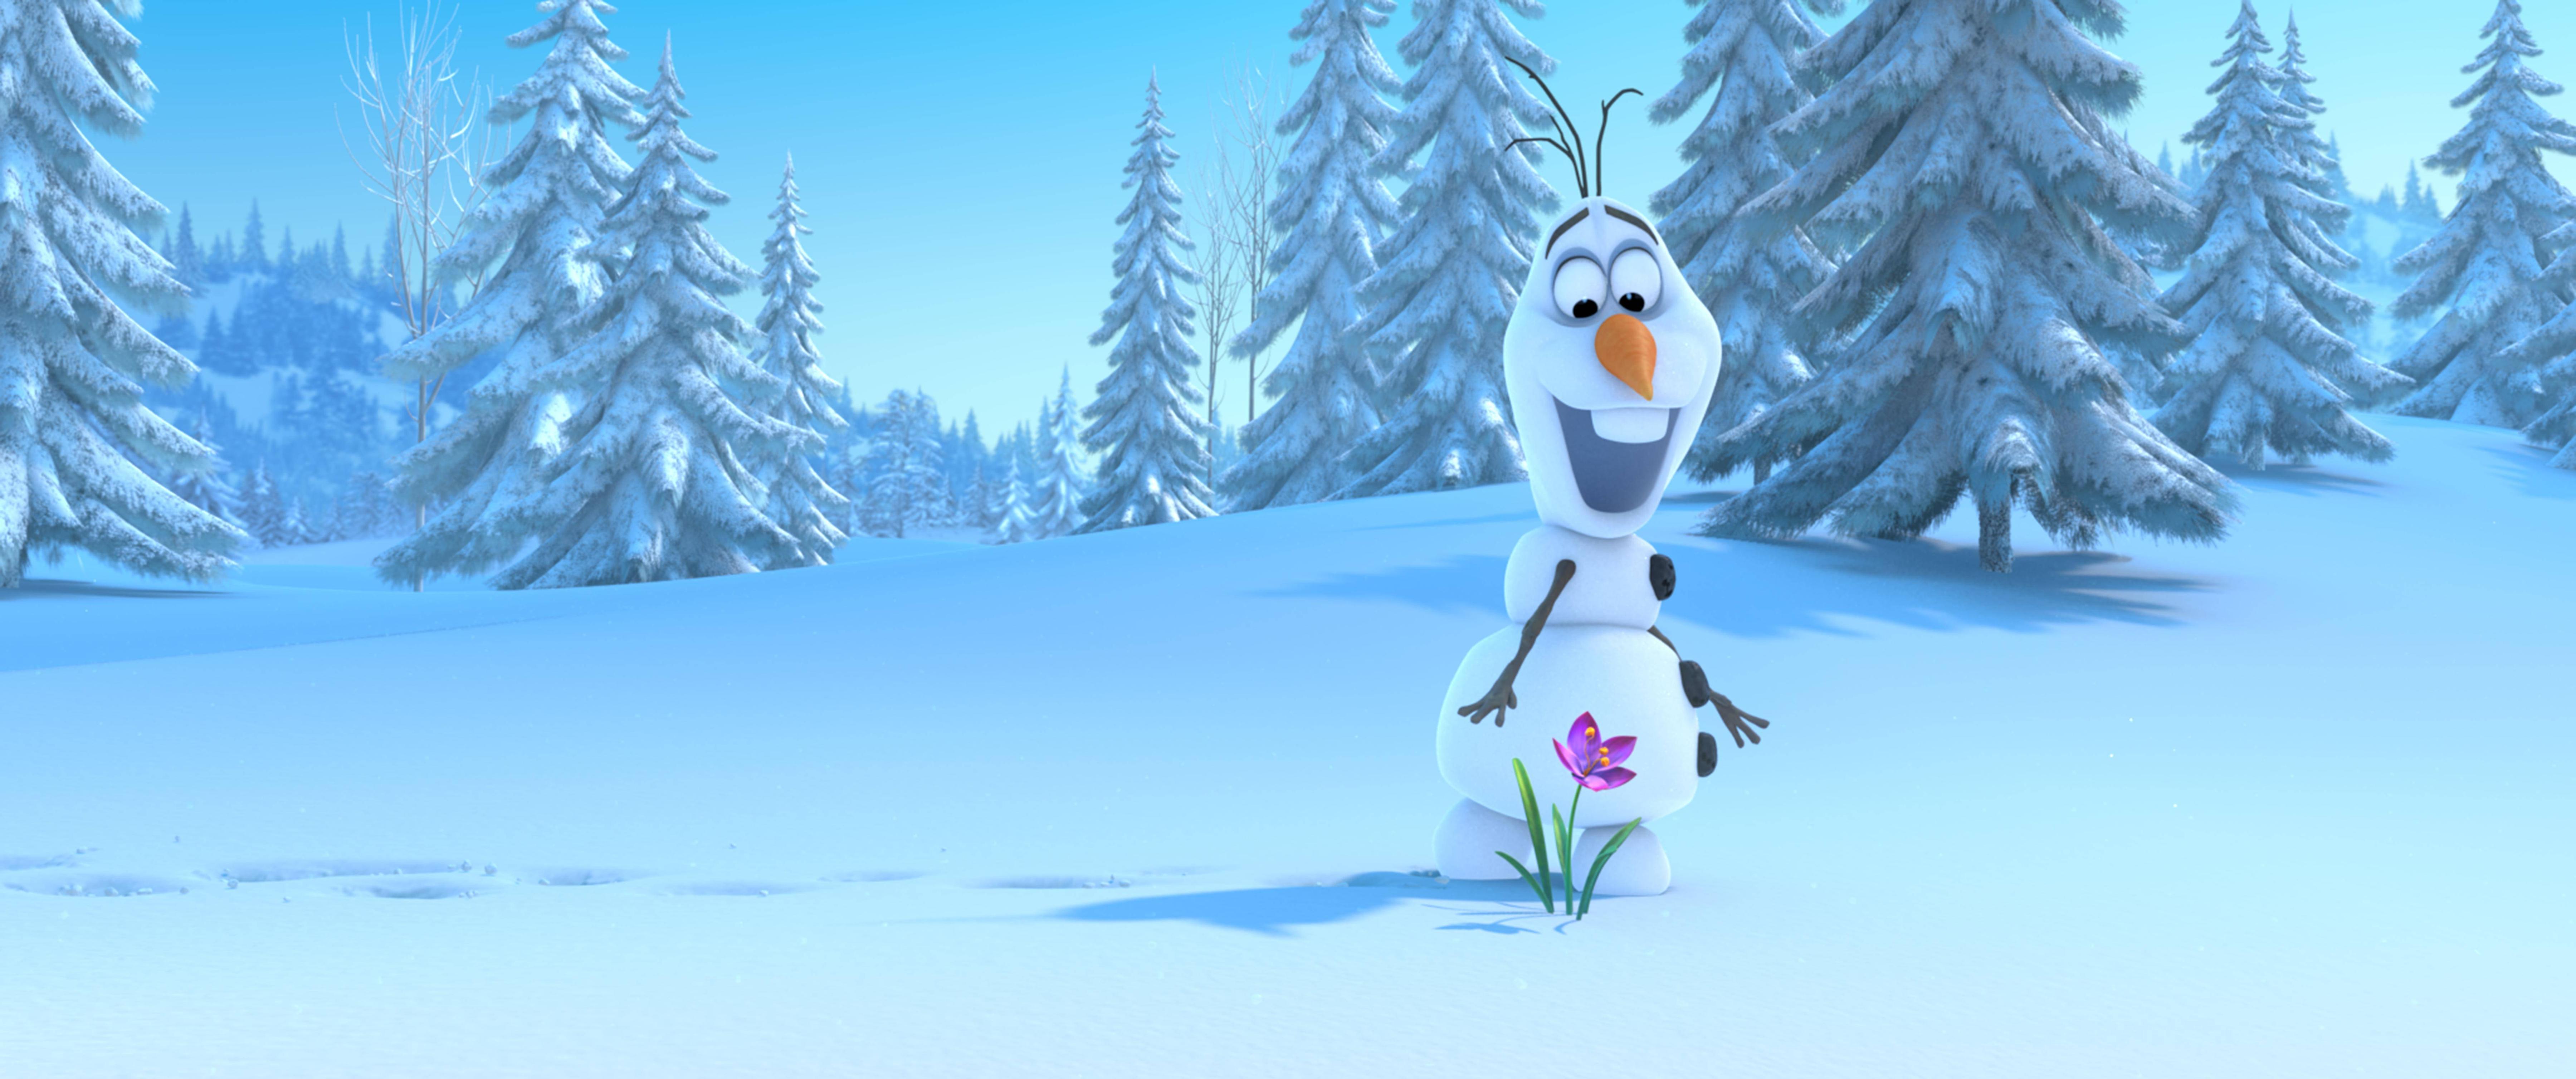 HD Olaf Frozen Wallpaper